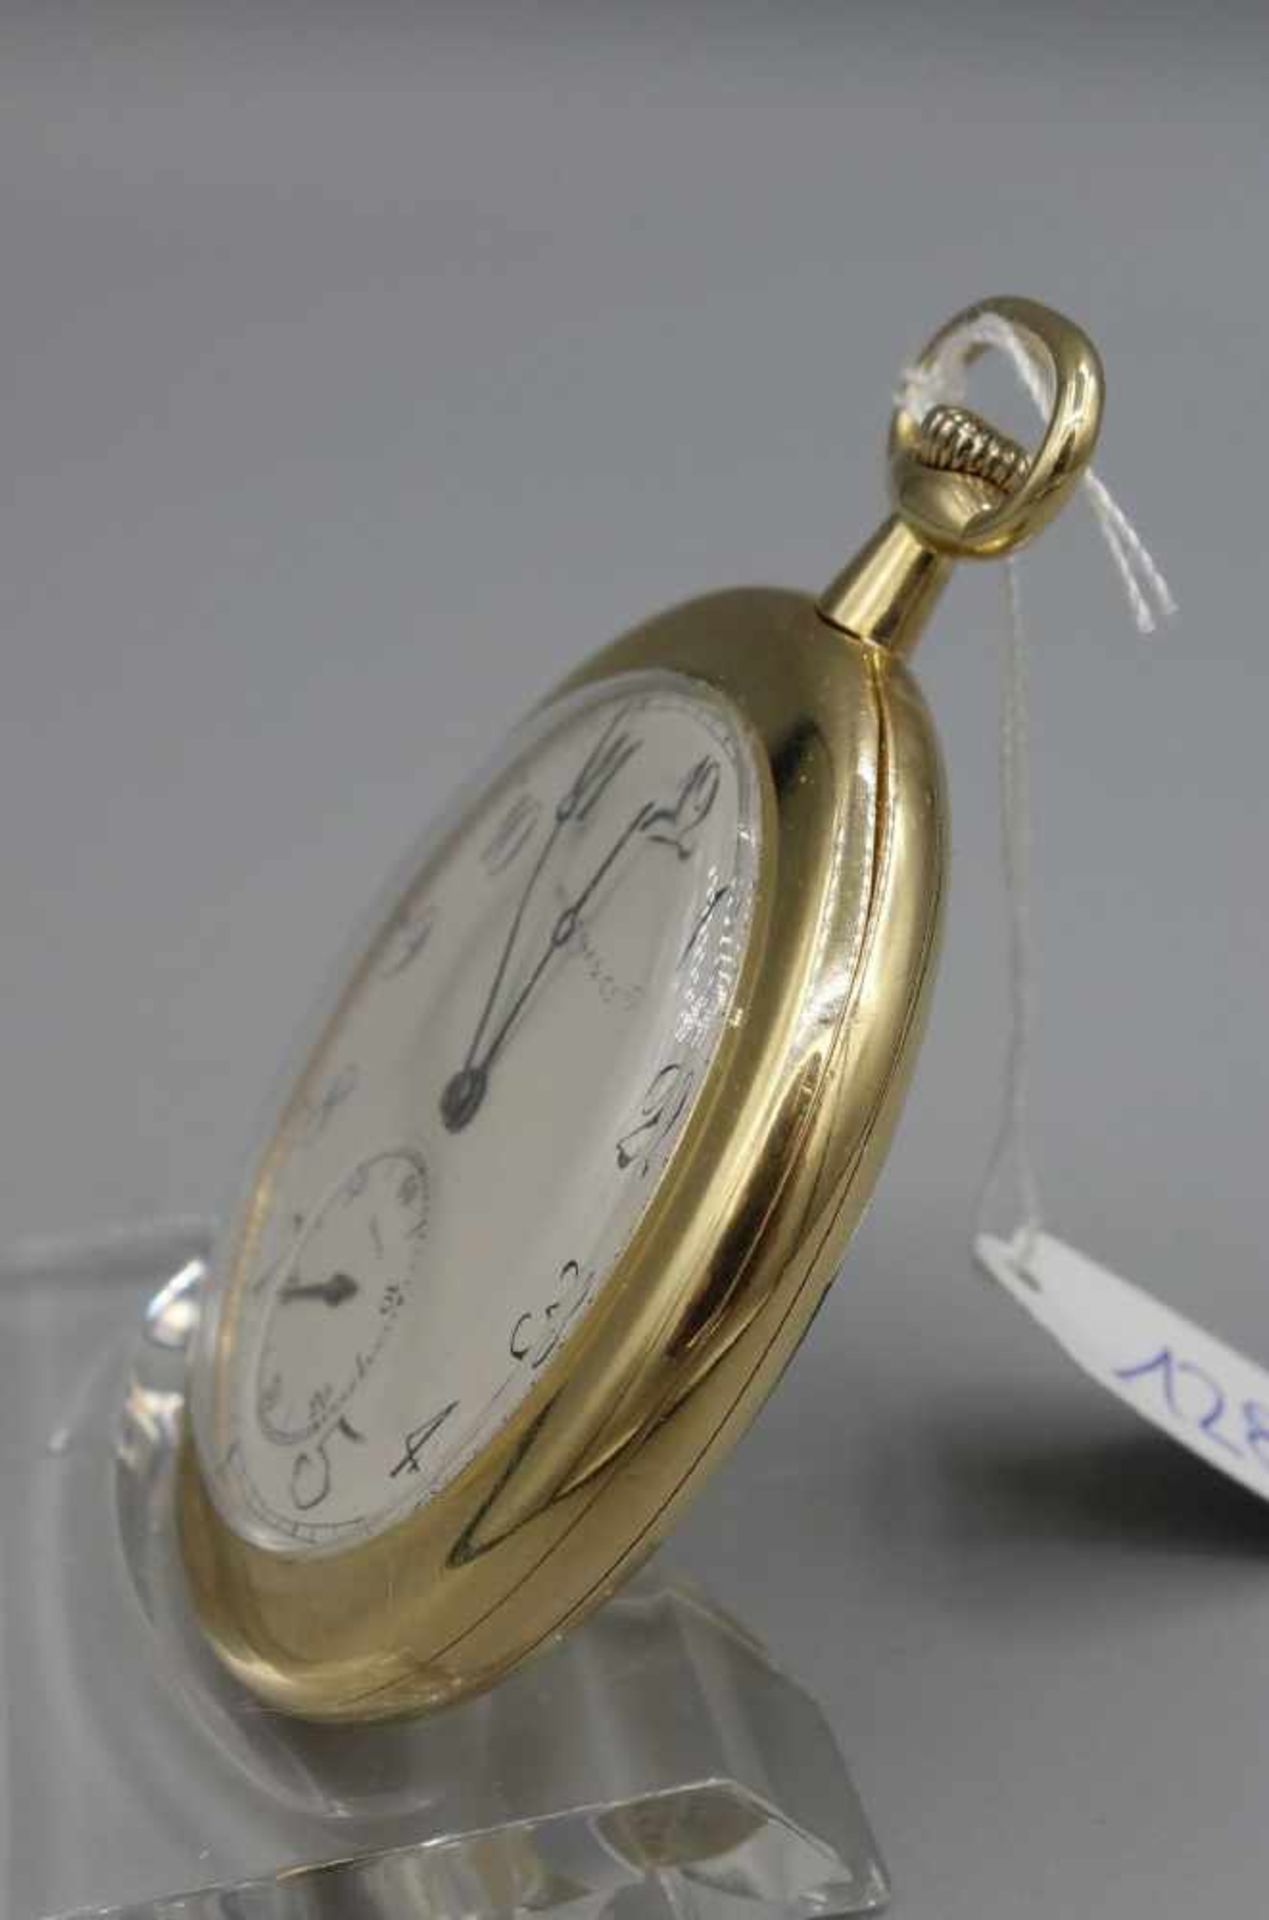 FLACHE TASCHENUHR MIT GOLDGEHÄUSE / golden half open face pocket watch, Handaufzug (Krone). - Bild 3 aus 8